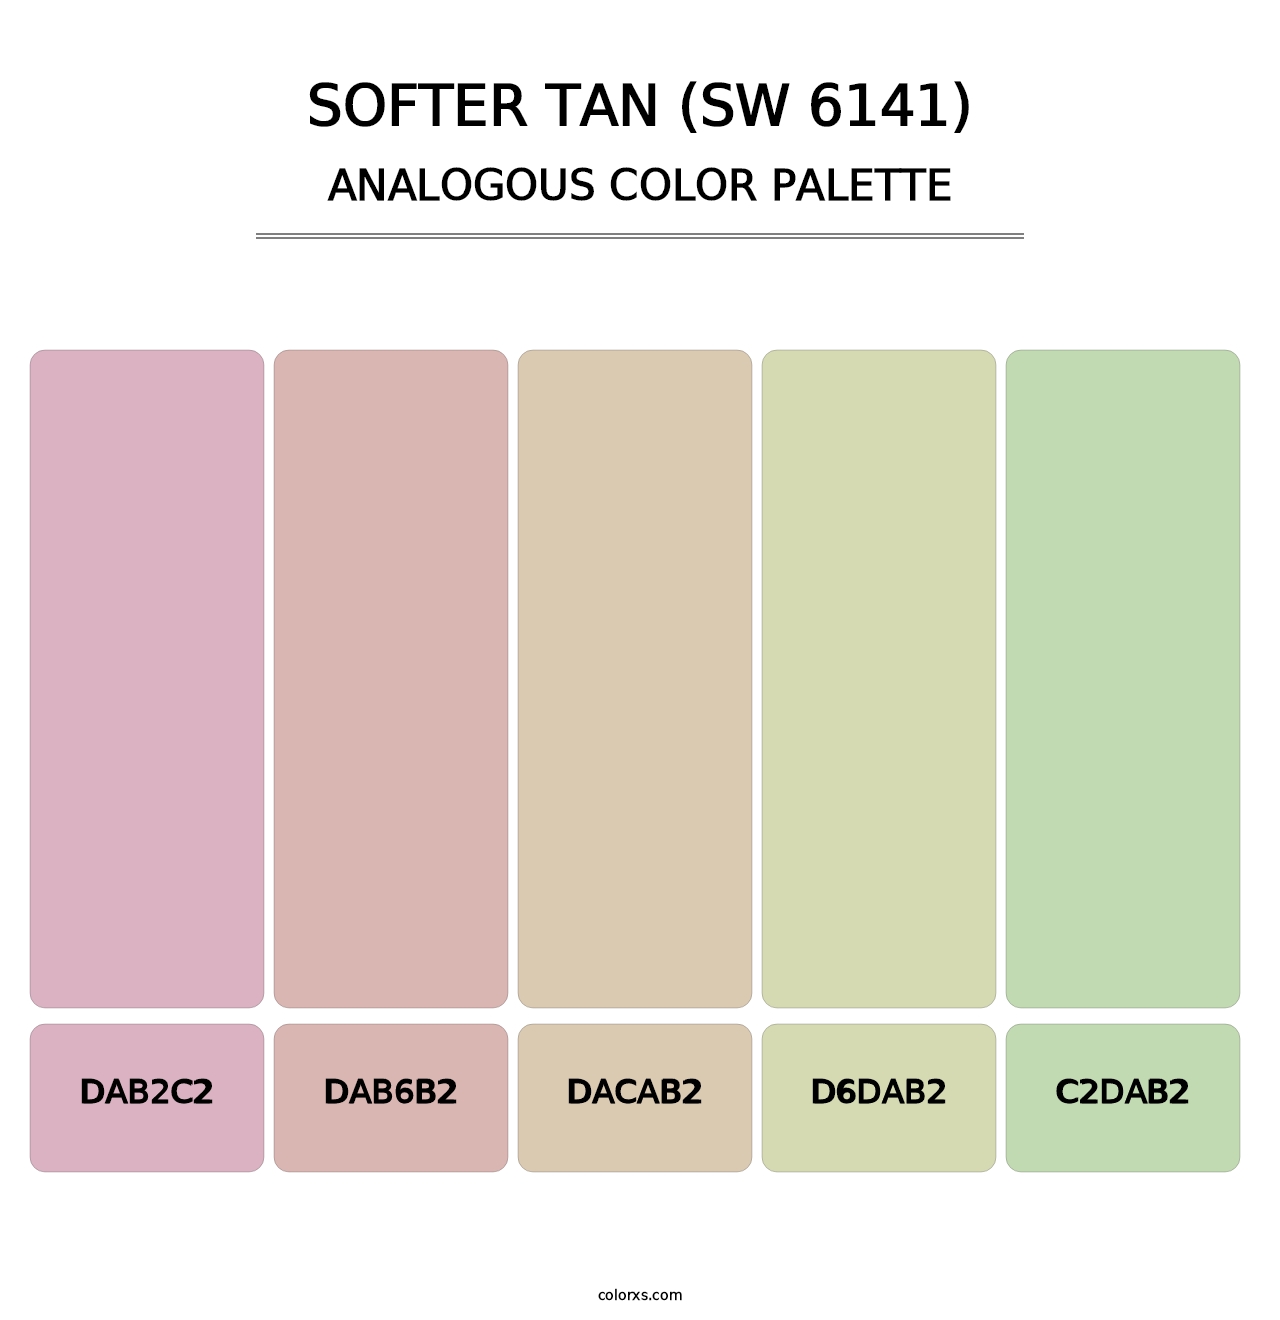 Softer Tan (SW 6141) - Analogous Color Palette